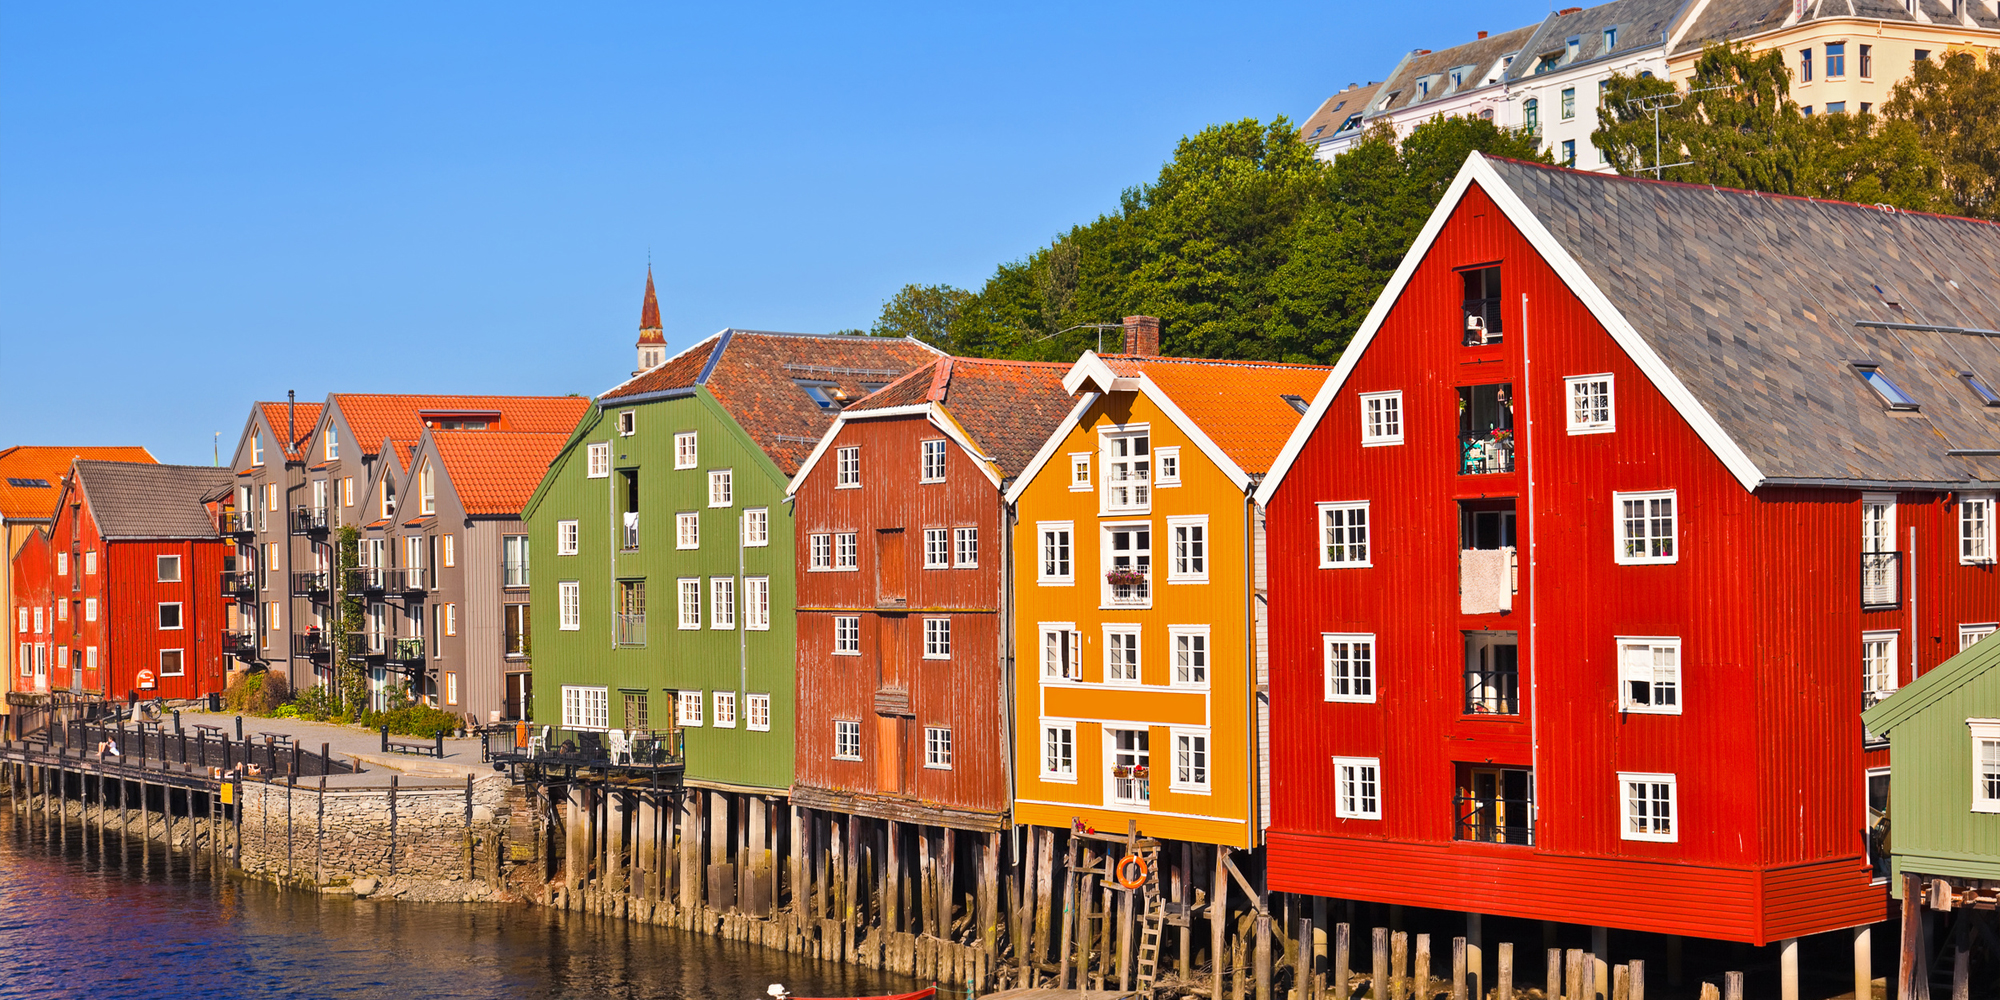 ノルウェーは資源に富んだ国で、その資力からBIMの浸透をバックアップしています。